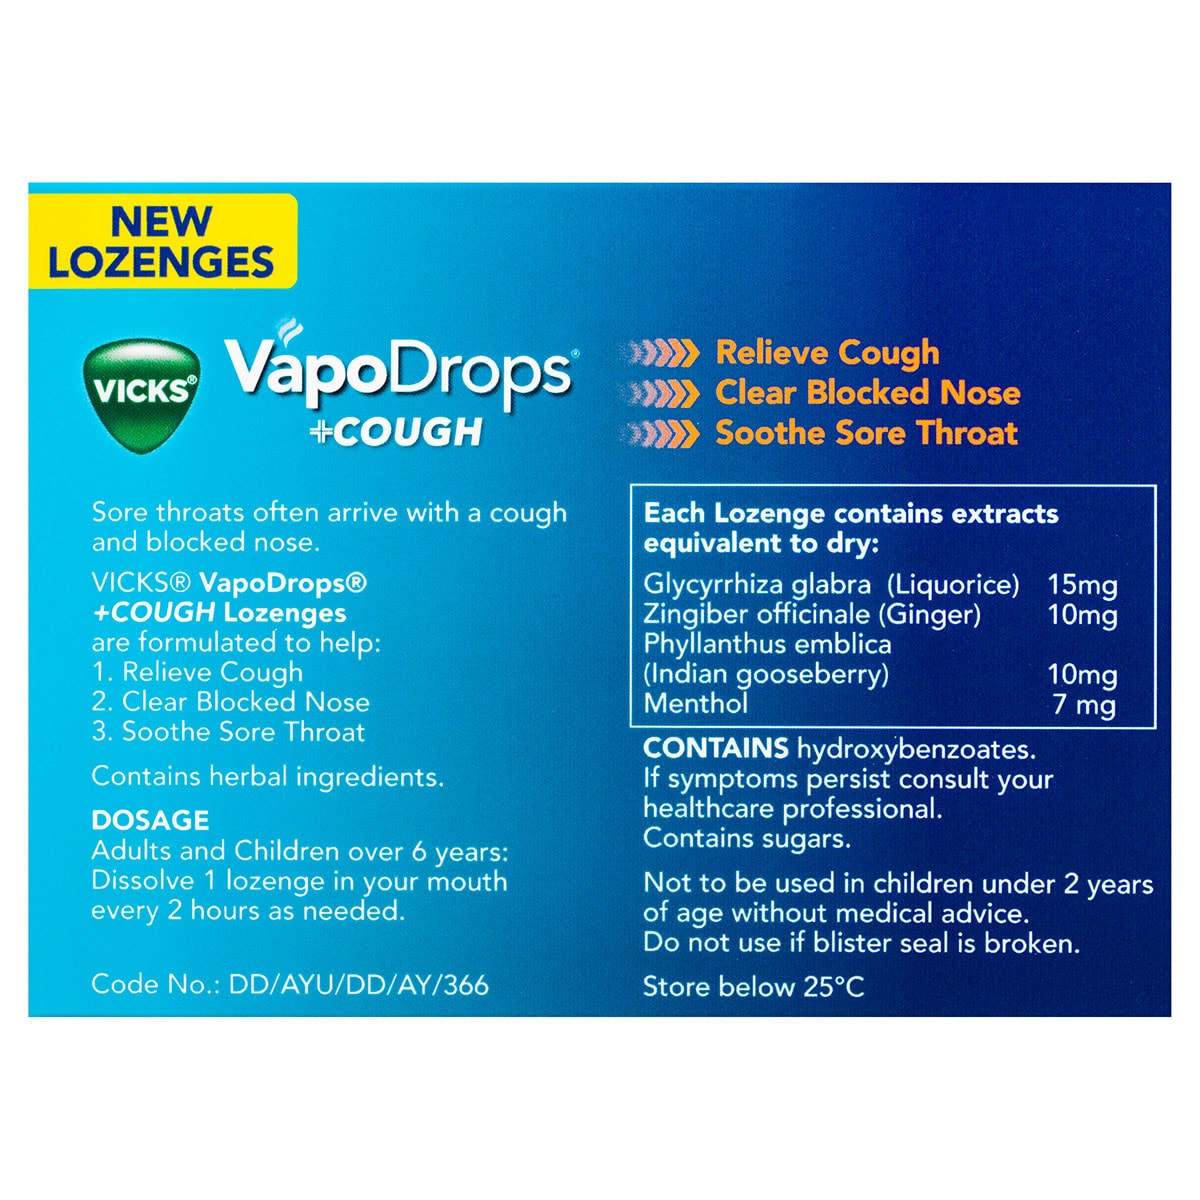 Vicks VapoDrops + Cough Orange Menthol 36 Lozenges